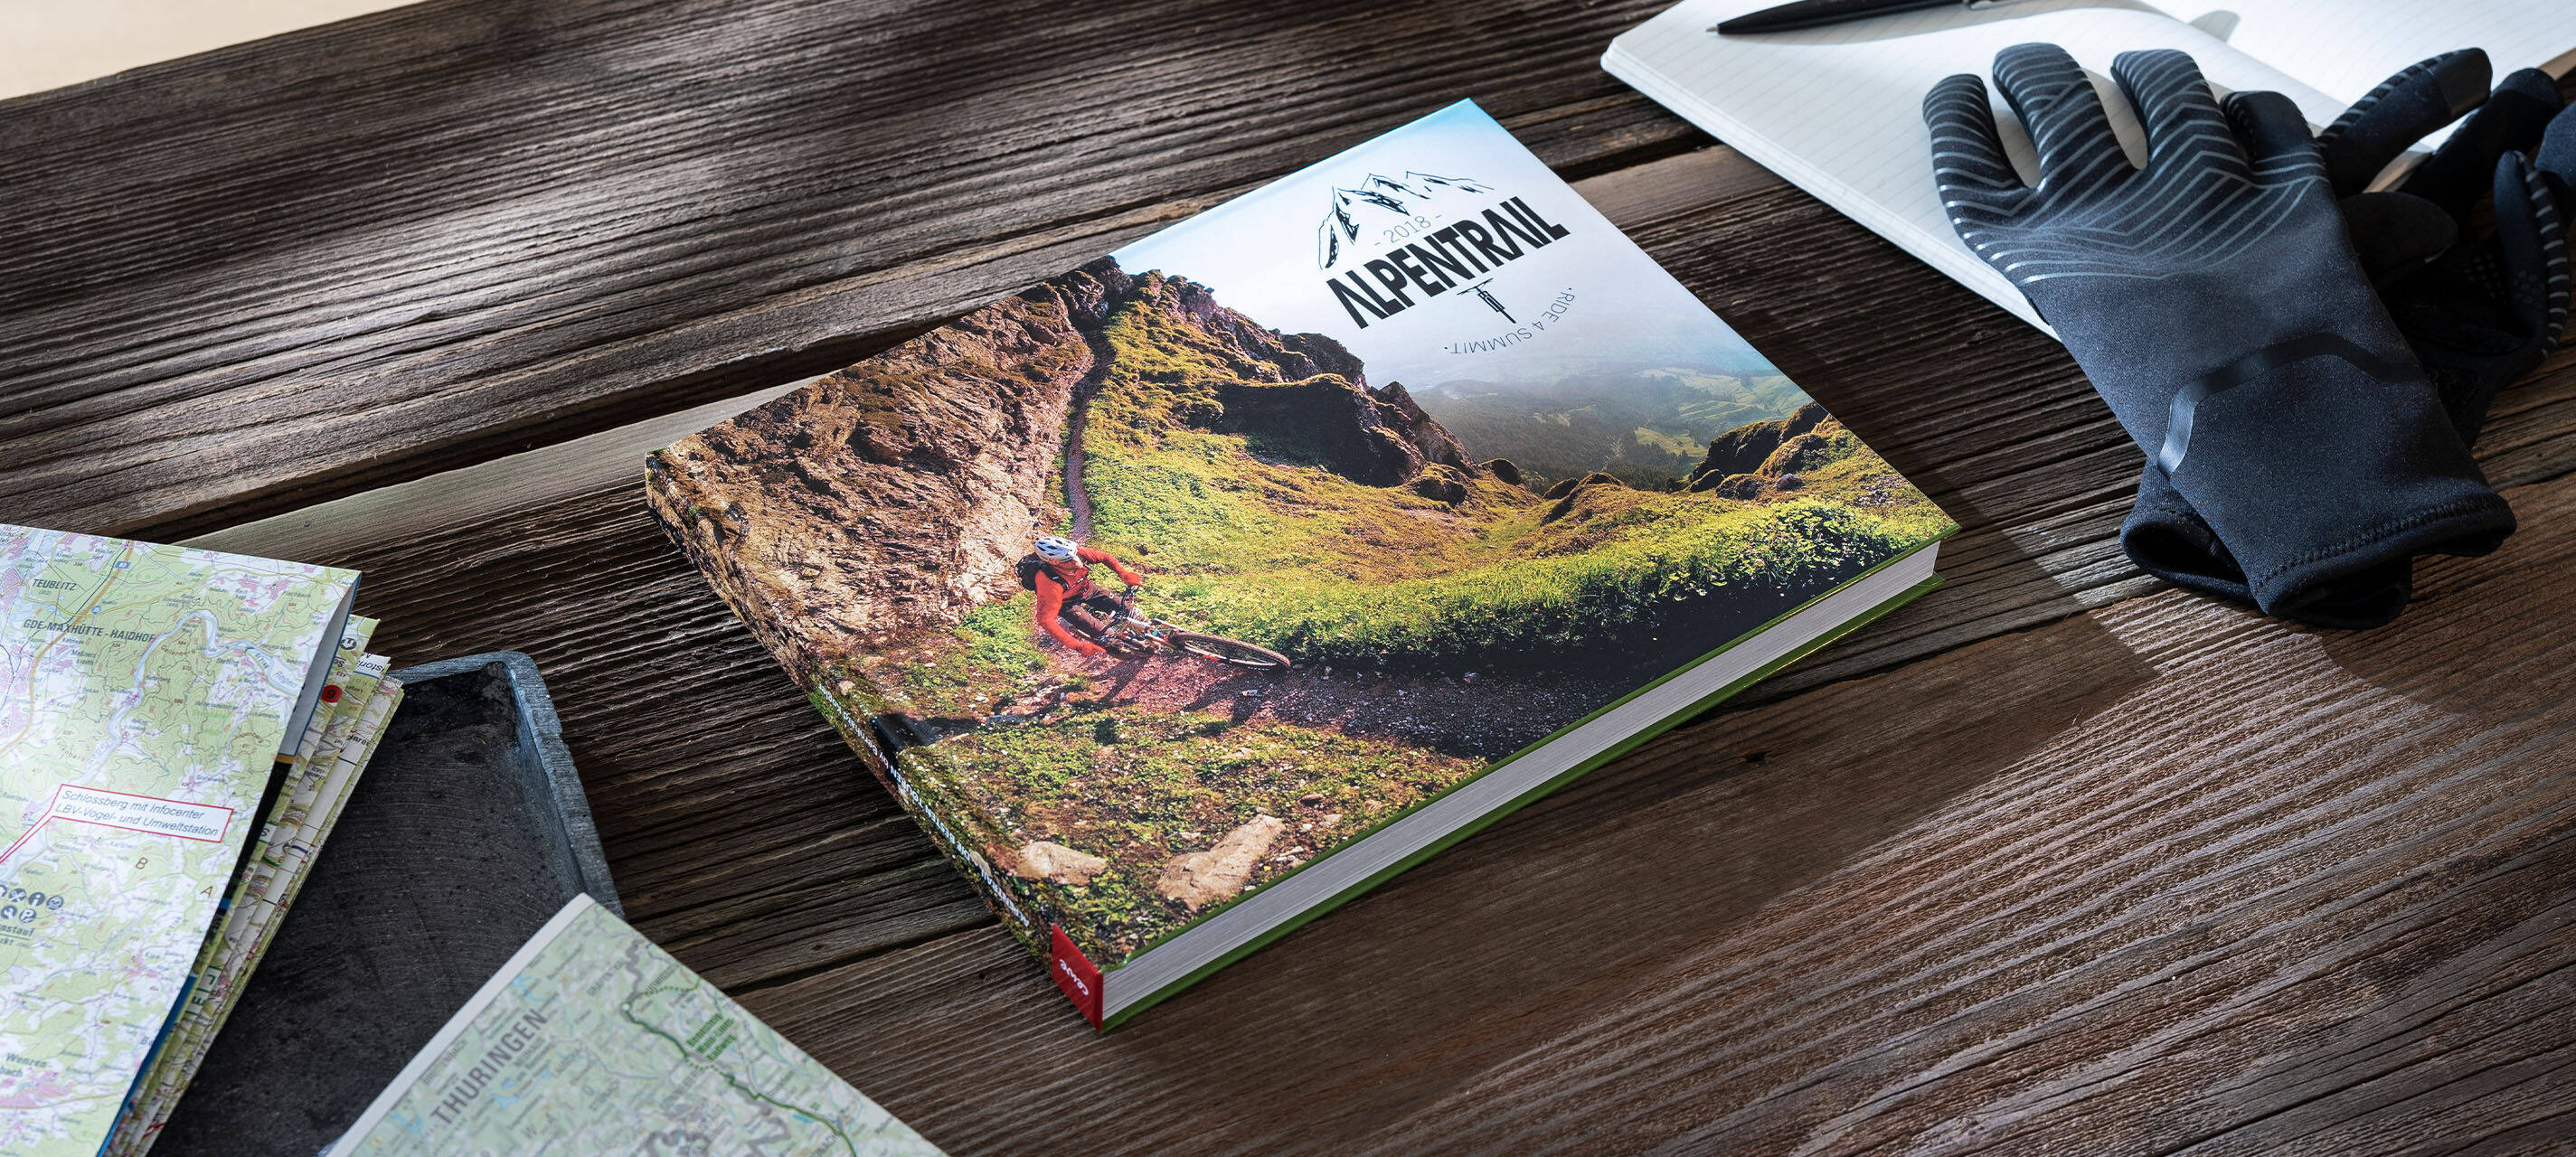 Auf einem Tisch liegen ein Fotobuch, Handschuhe, ein Heft und Landkarten. Auf dem Fotobuch sind ein Mountainbike sowie die Aufschrift “Alpentrail 2018” zu sehen.